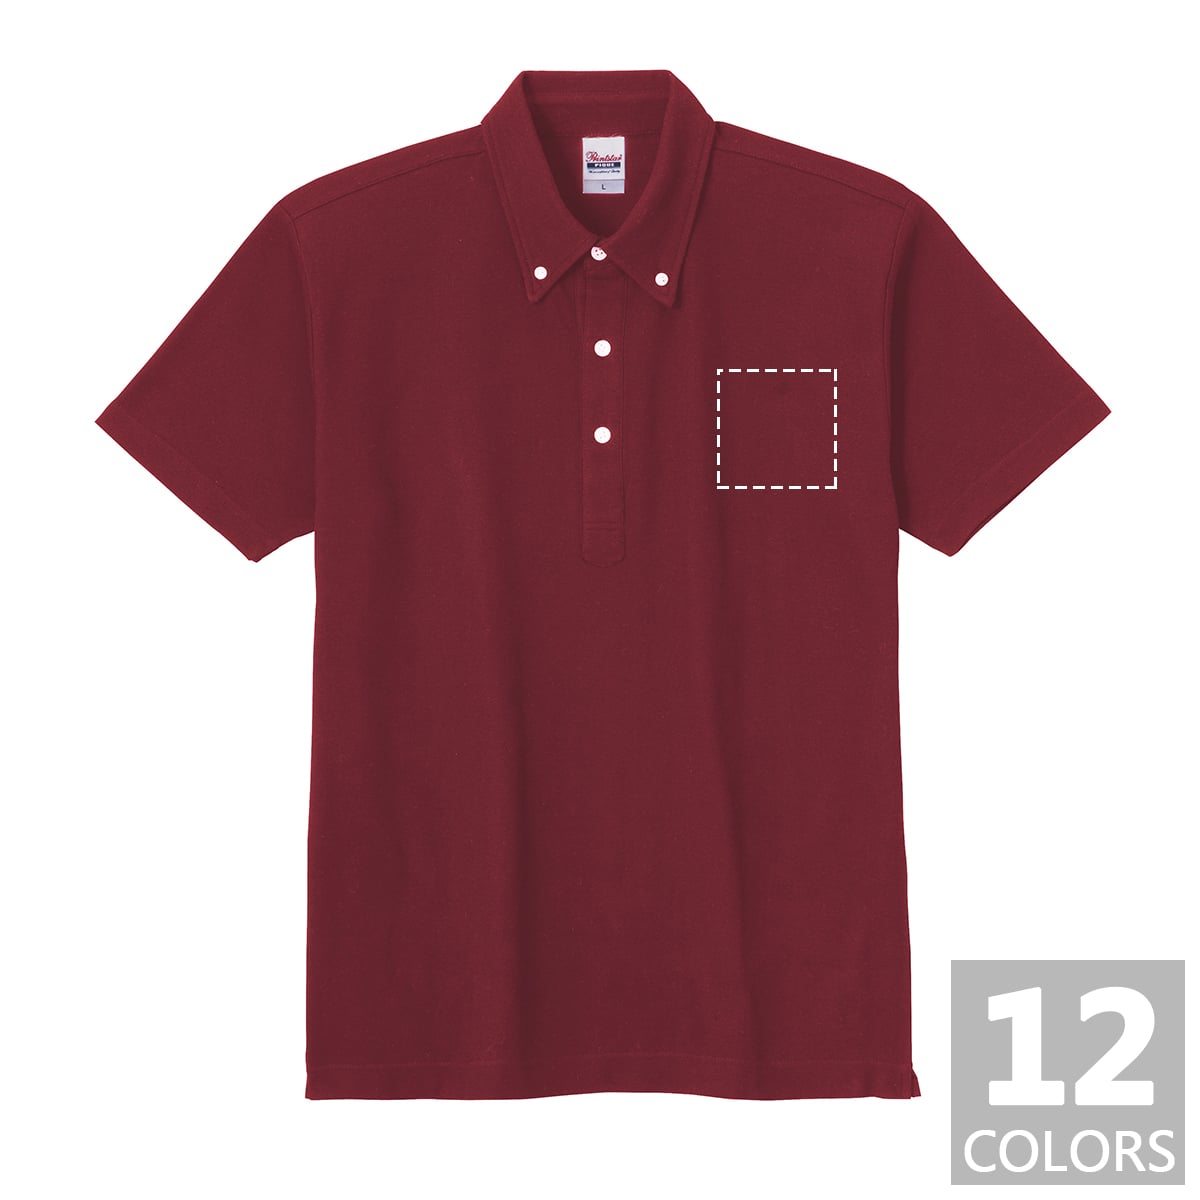 ポロシャツ / スタンダードB/Dポロシャツ(胸ポケットなし) レギュラーサイズ / 胸ワンポイントプリント